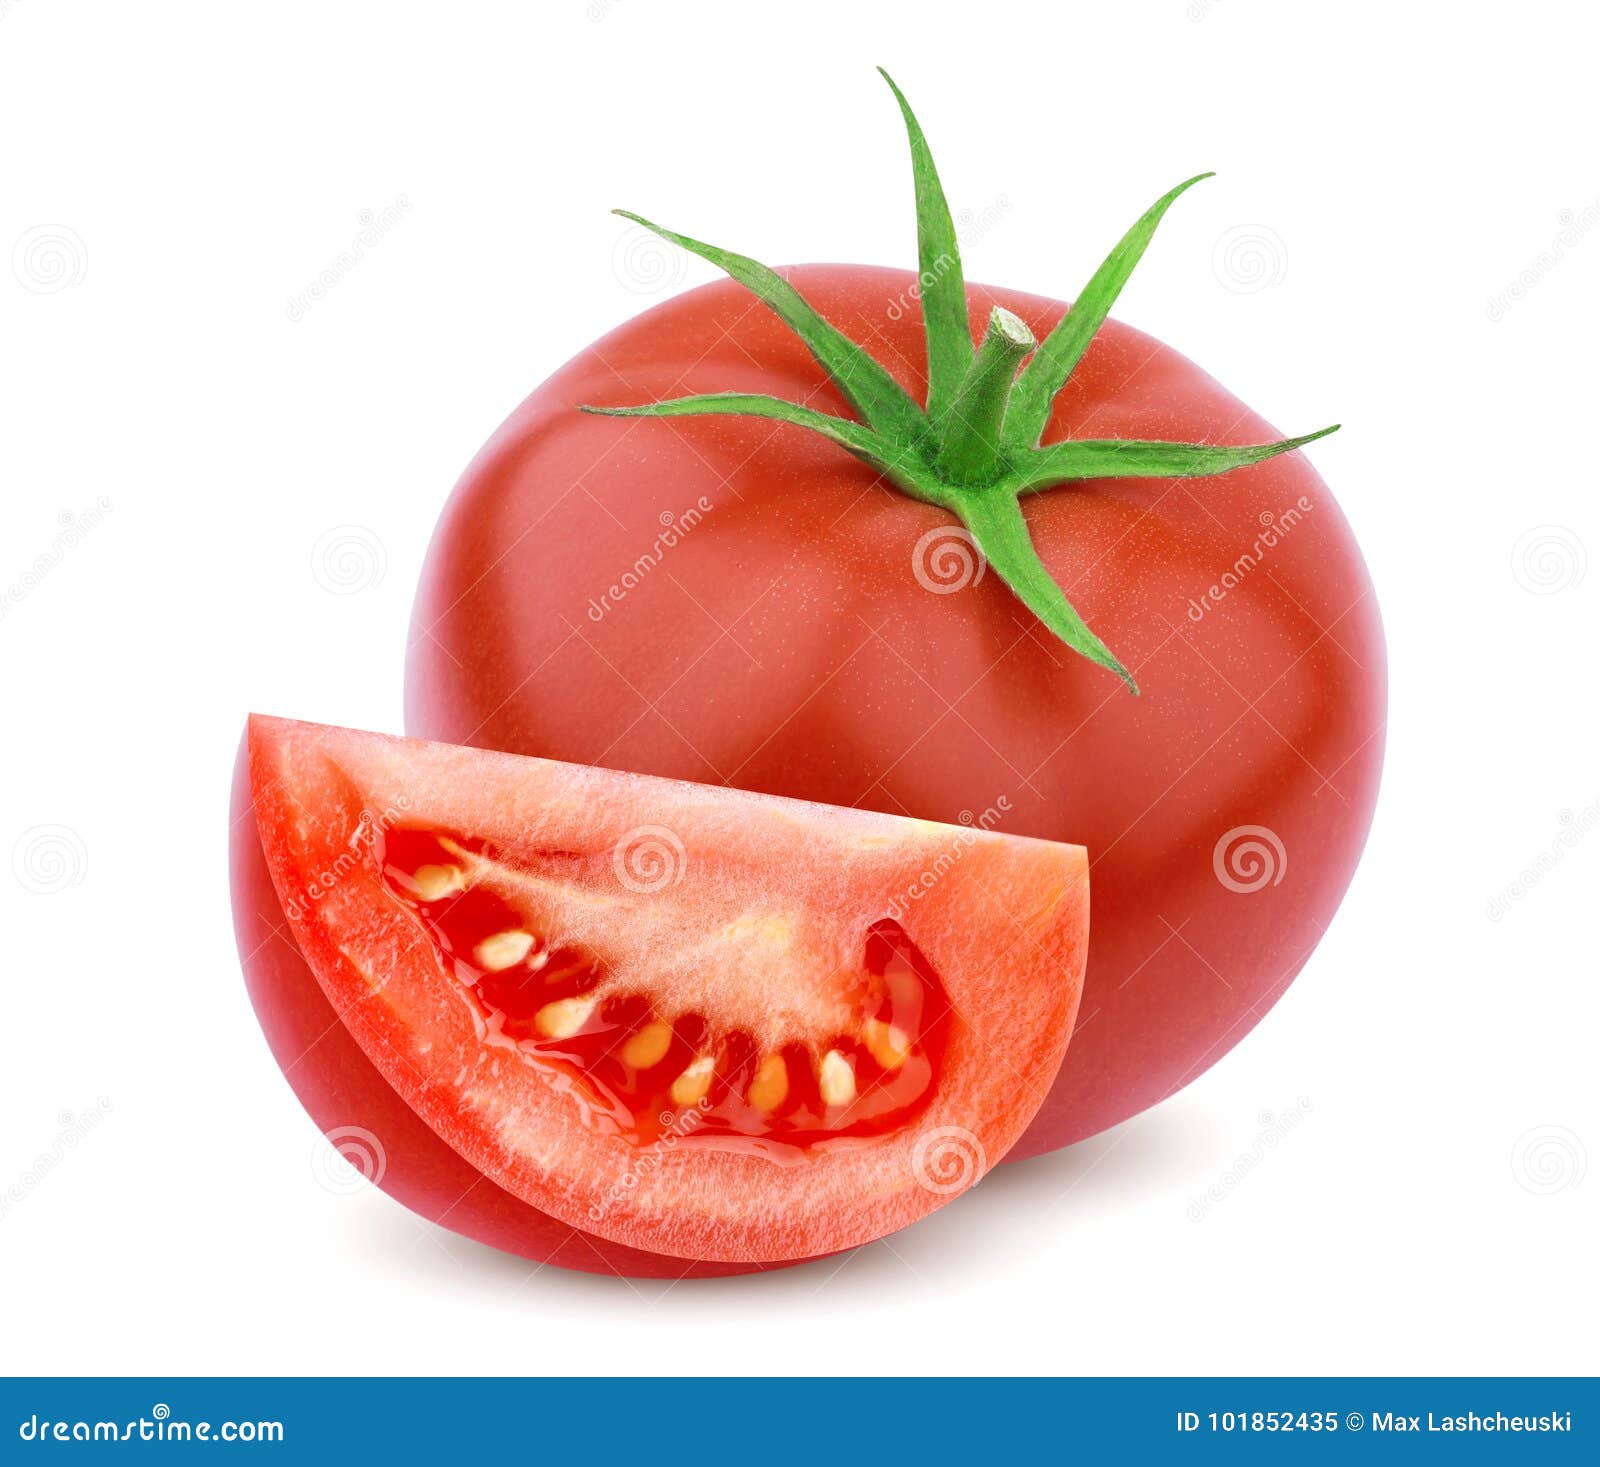 single tomato  on white background